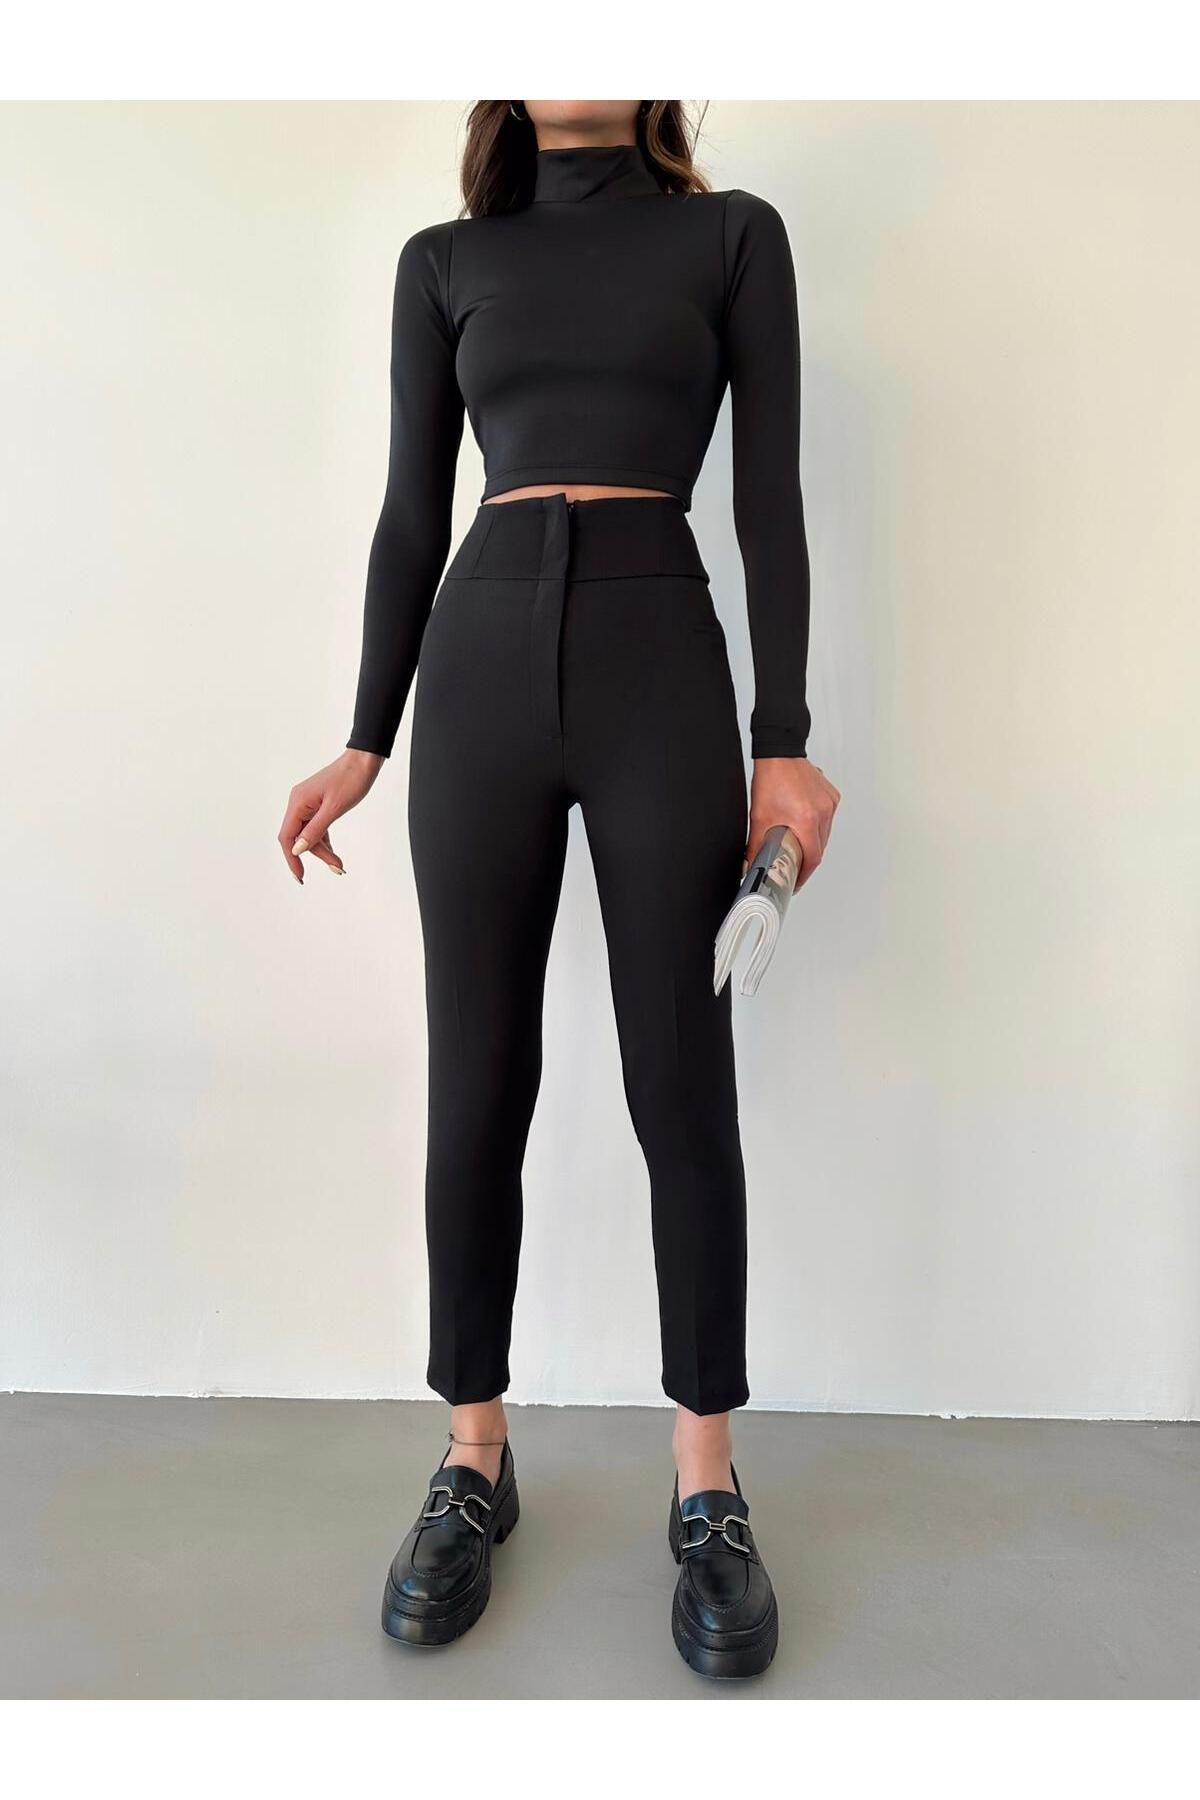 monlera Kadın Darpaça Yüksek Bel Likralı Siyah Kumaş Pantolon